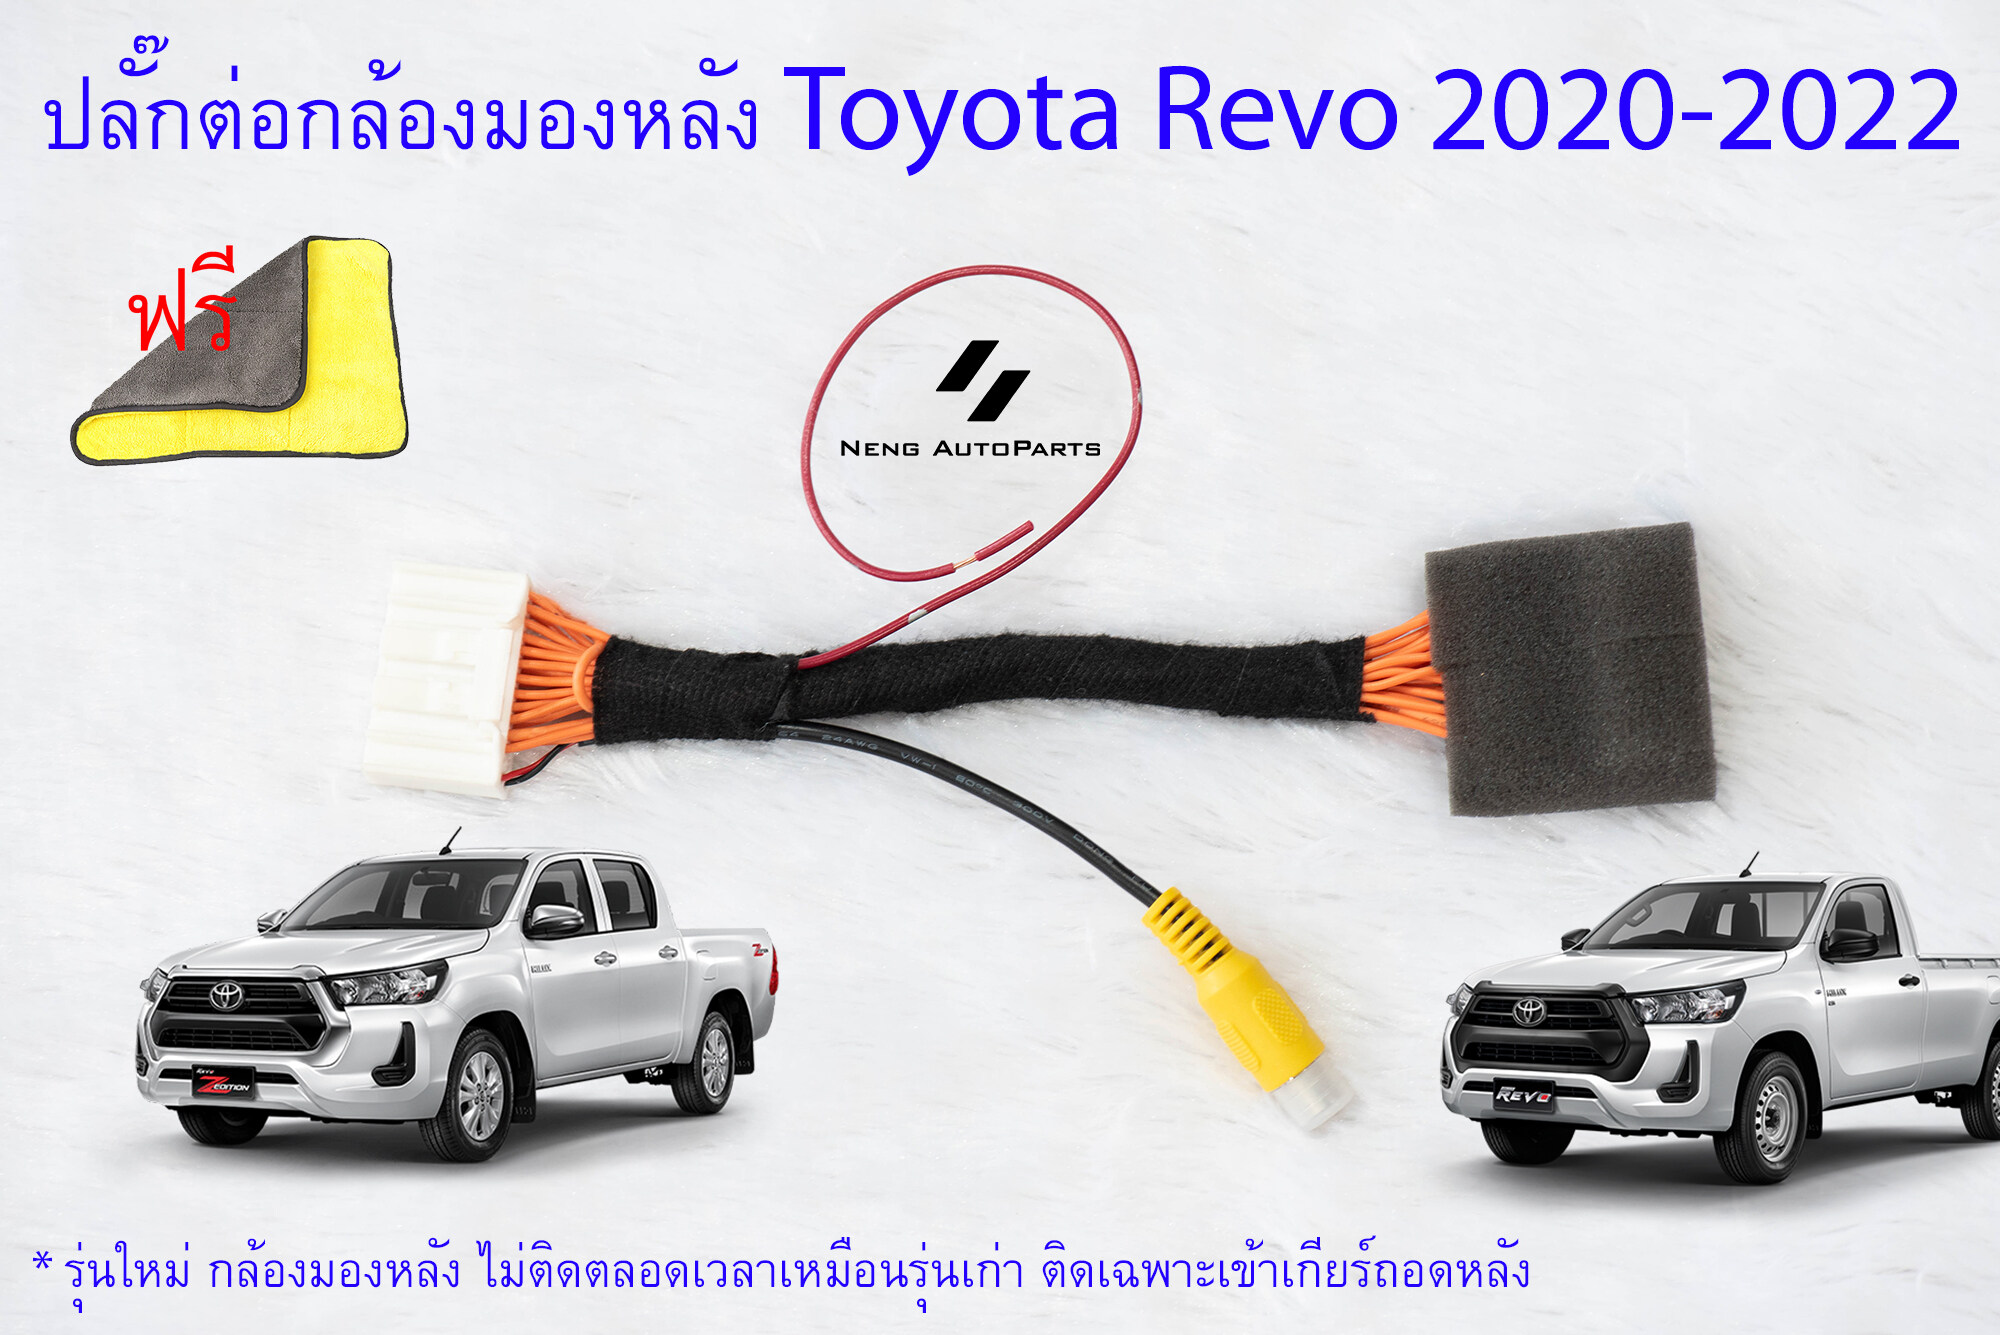 ปลั๊กต่อกล้องมองหลังพร้อมปลดล็อคหน้าจอ สำหรับ Toyota Revo Z-Edition 2020 ทุกรุ่น